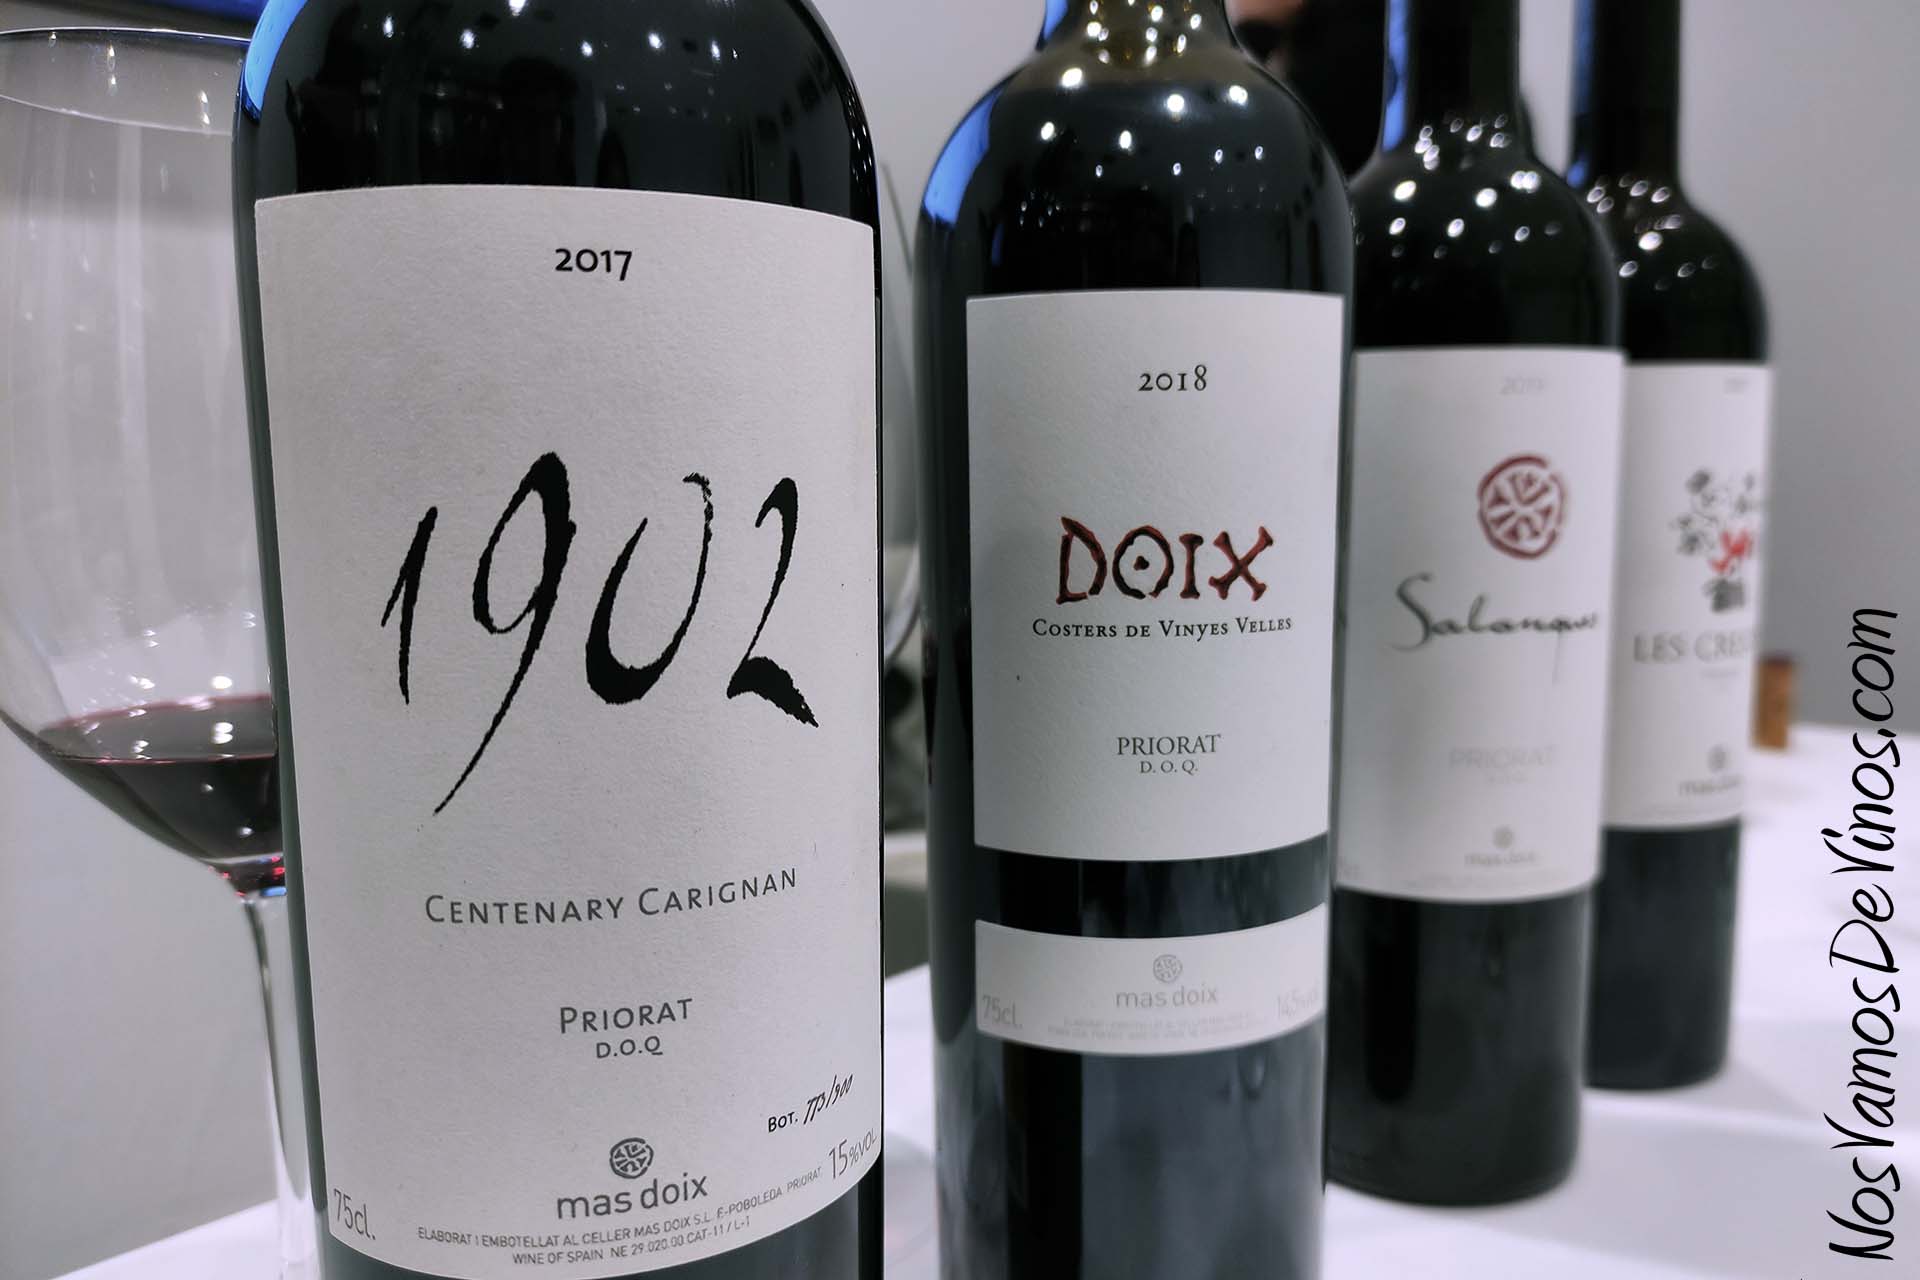 Cata de vinos de celler Mas Doix en Outlet de Vinos. 1902 2017, Doix 2018, Salenques 2019 y Les Crestes 2021